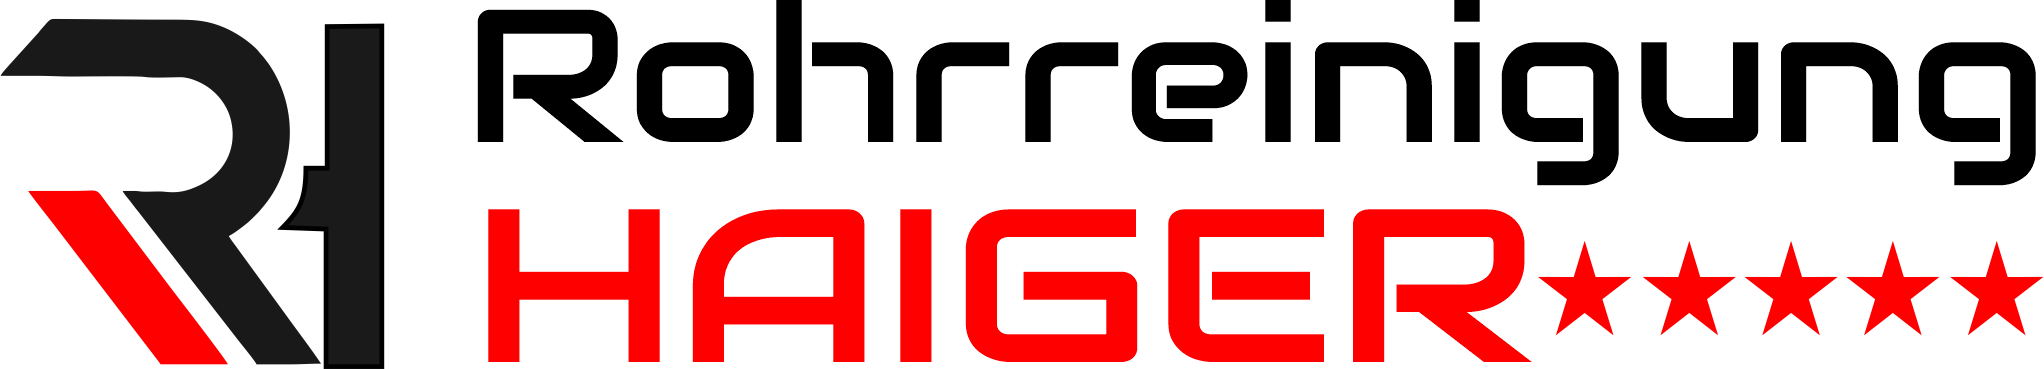 Rohrreinigung Haiger Logo